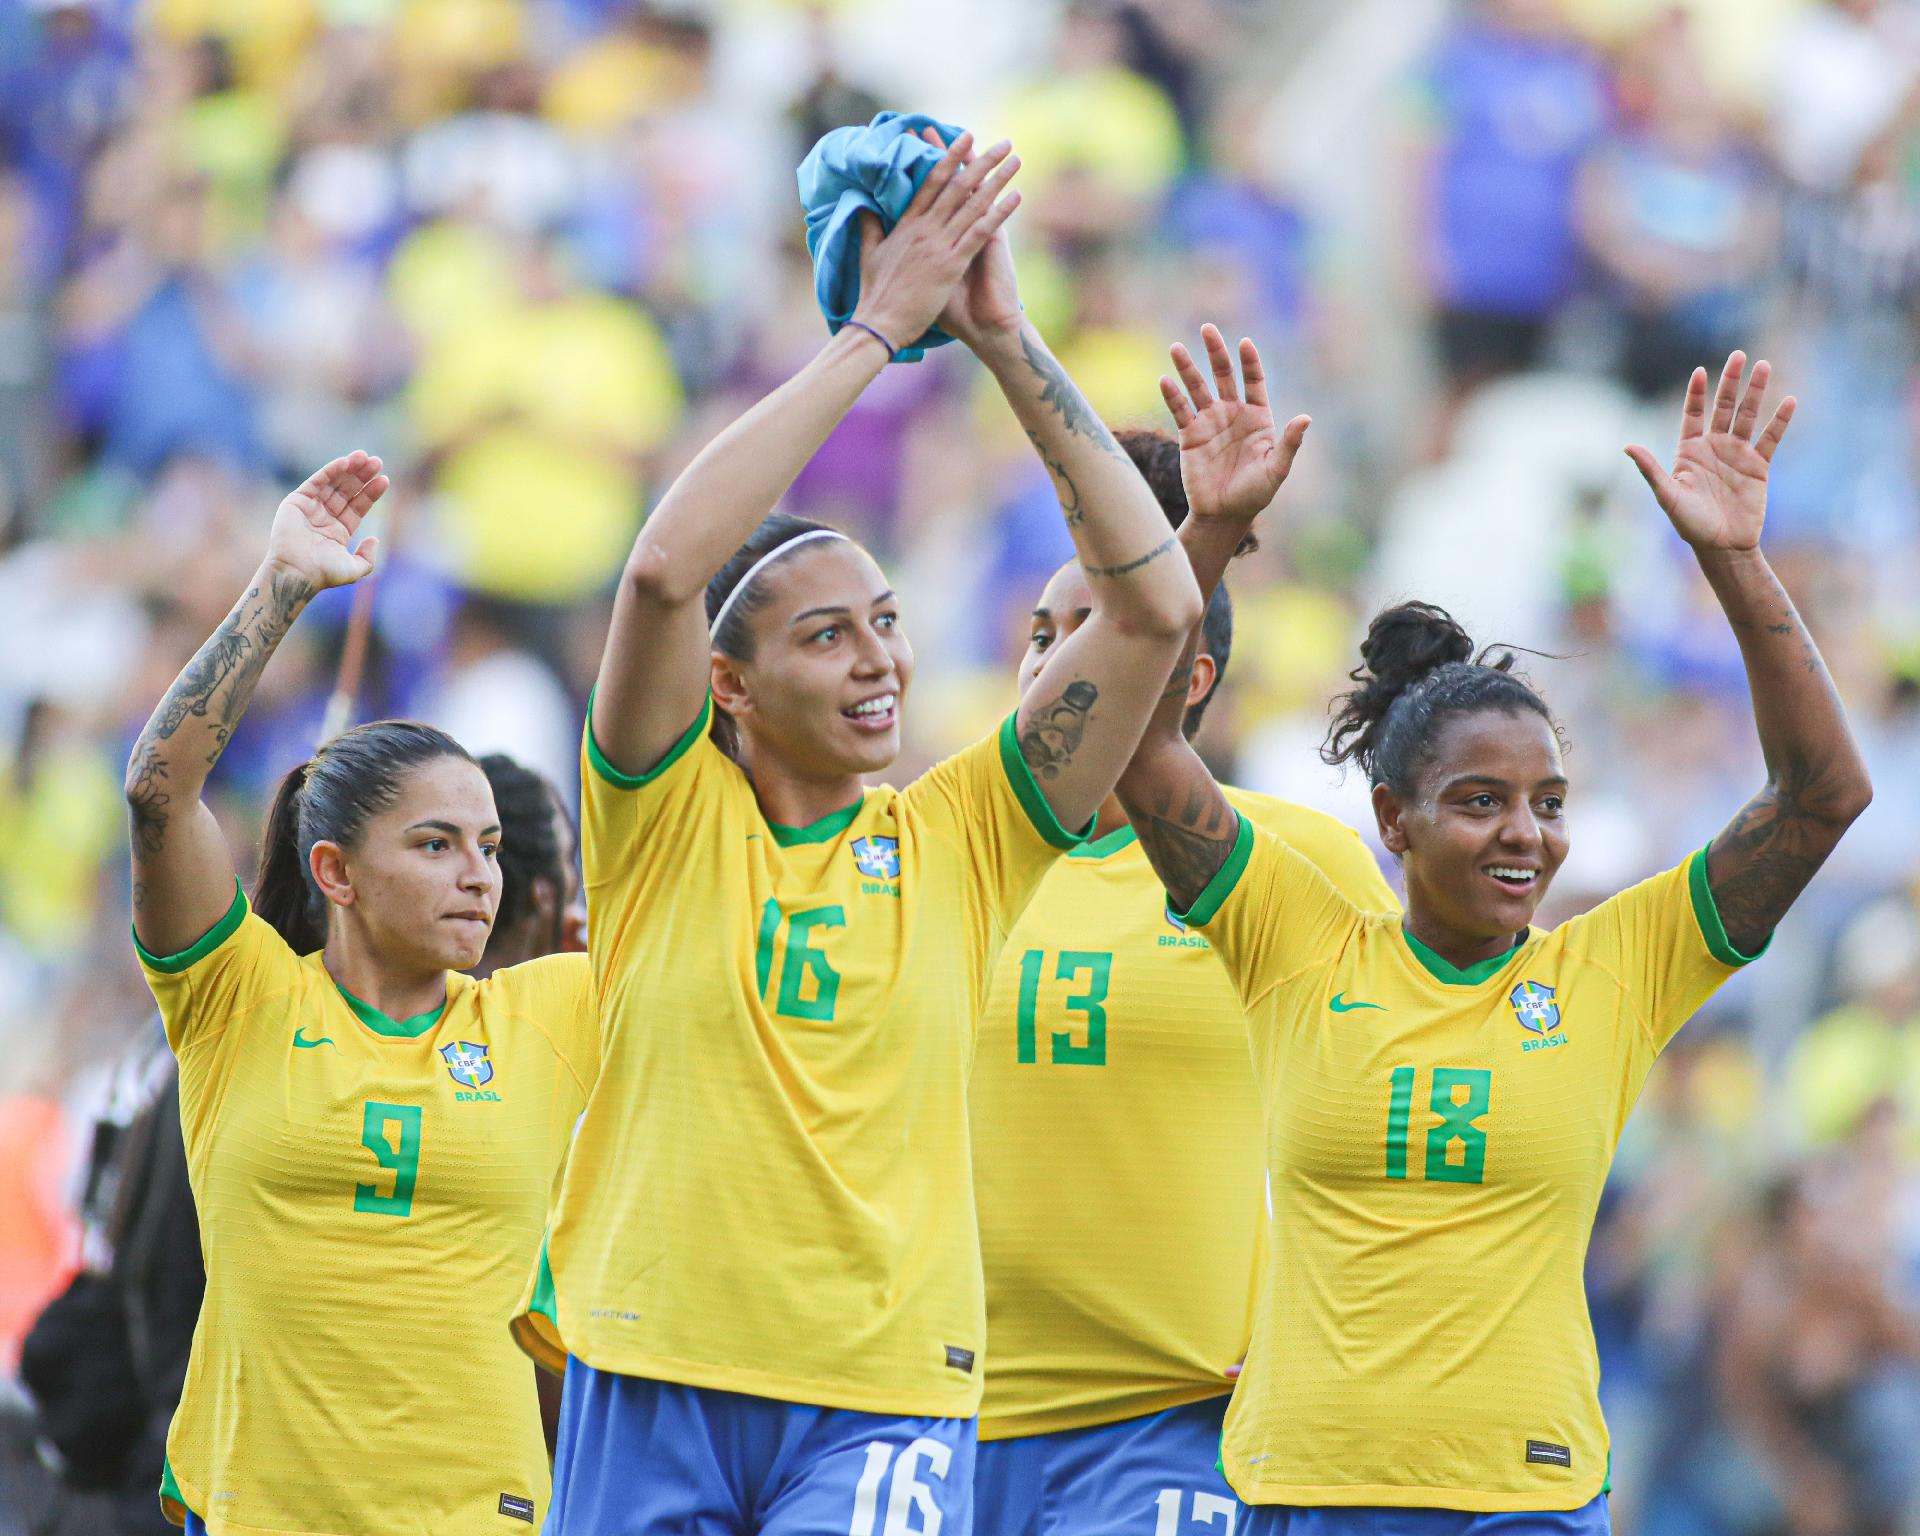 Futebol feminino: hoje é dia de fazer história - 24/09/2022 - UOL